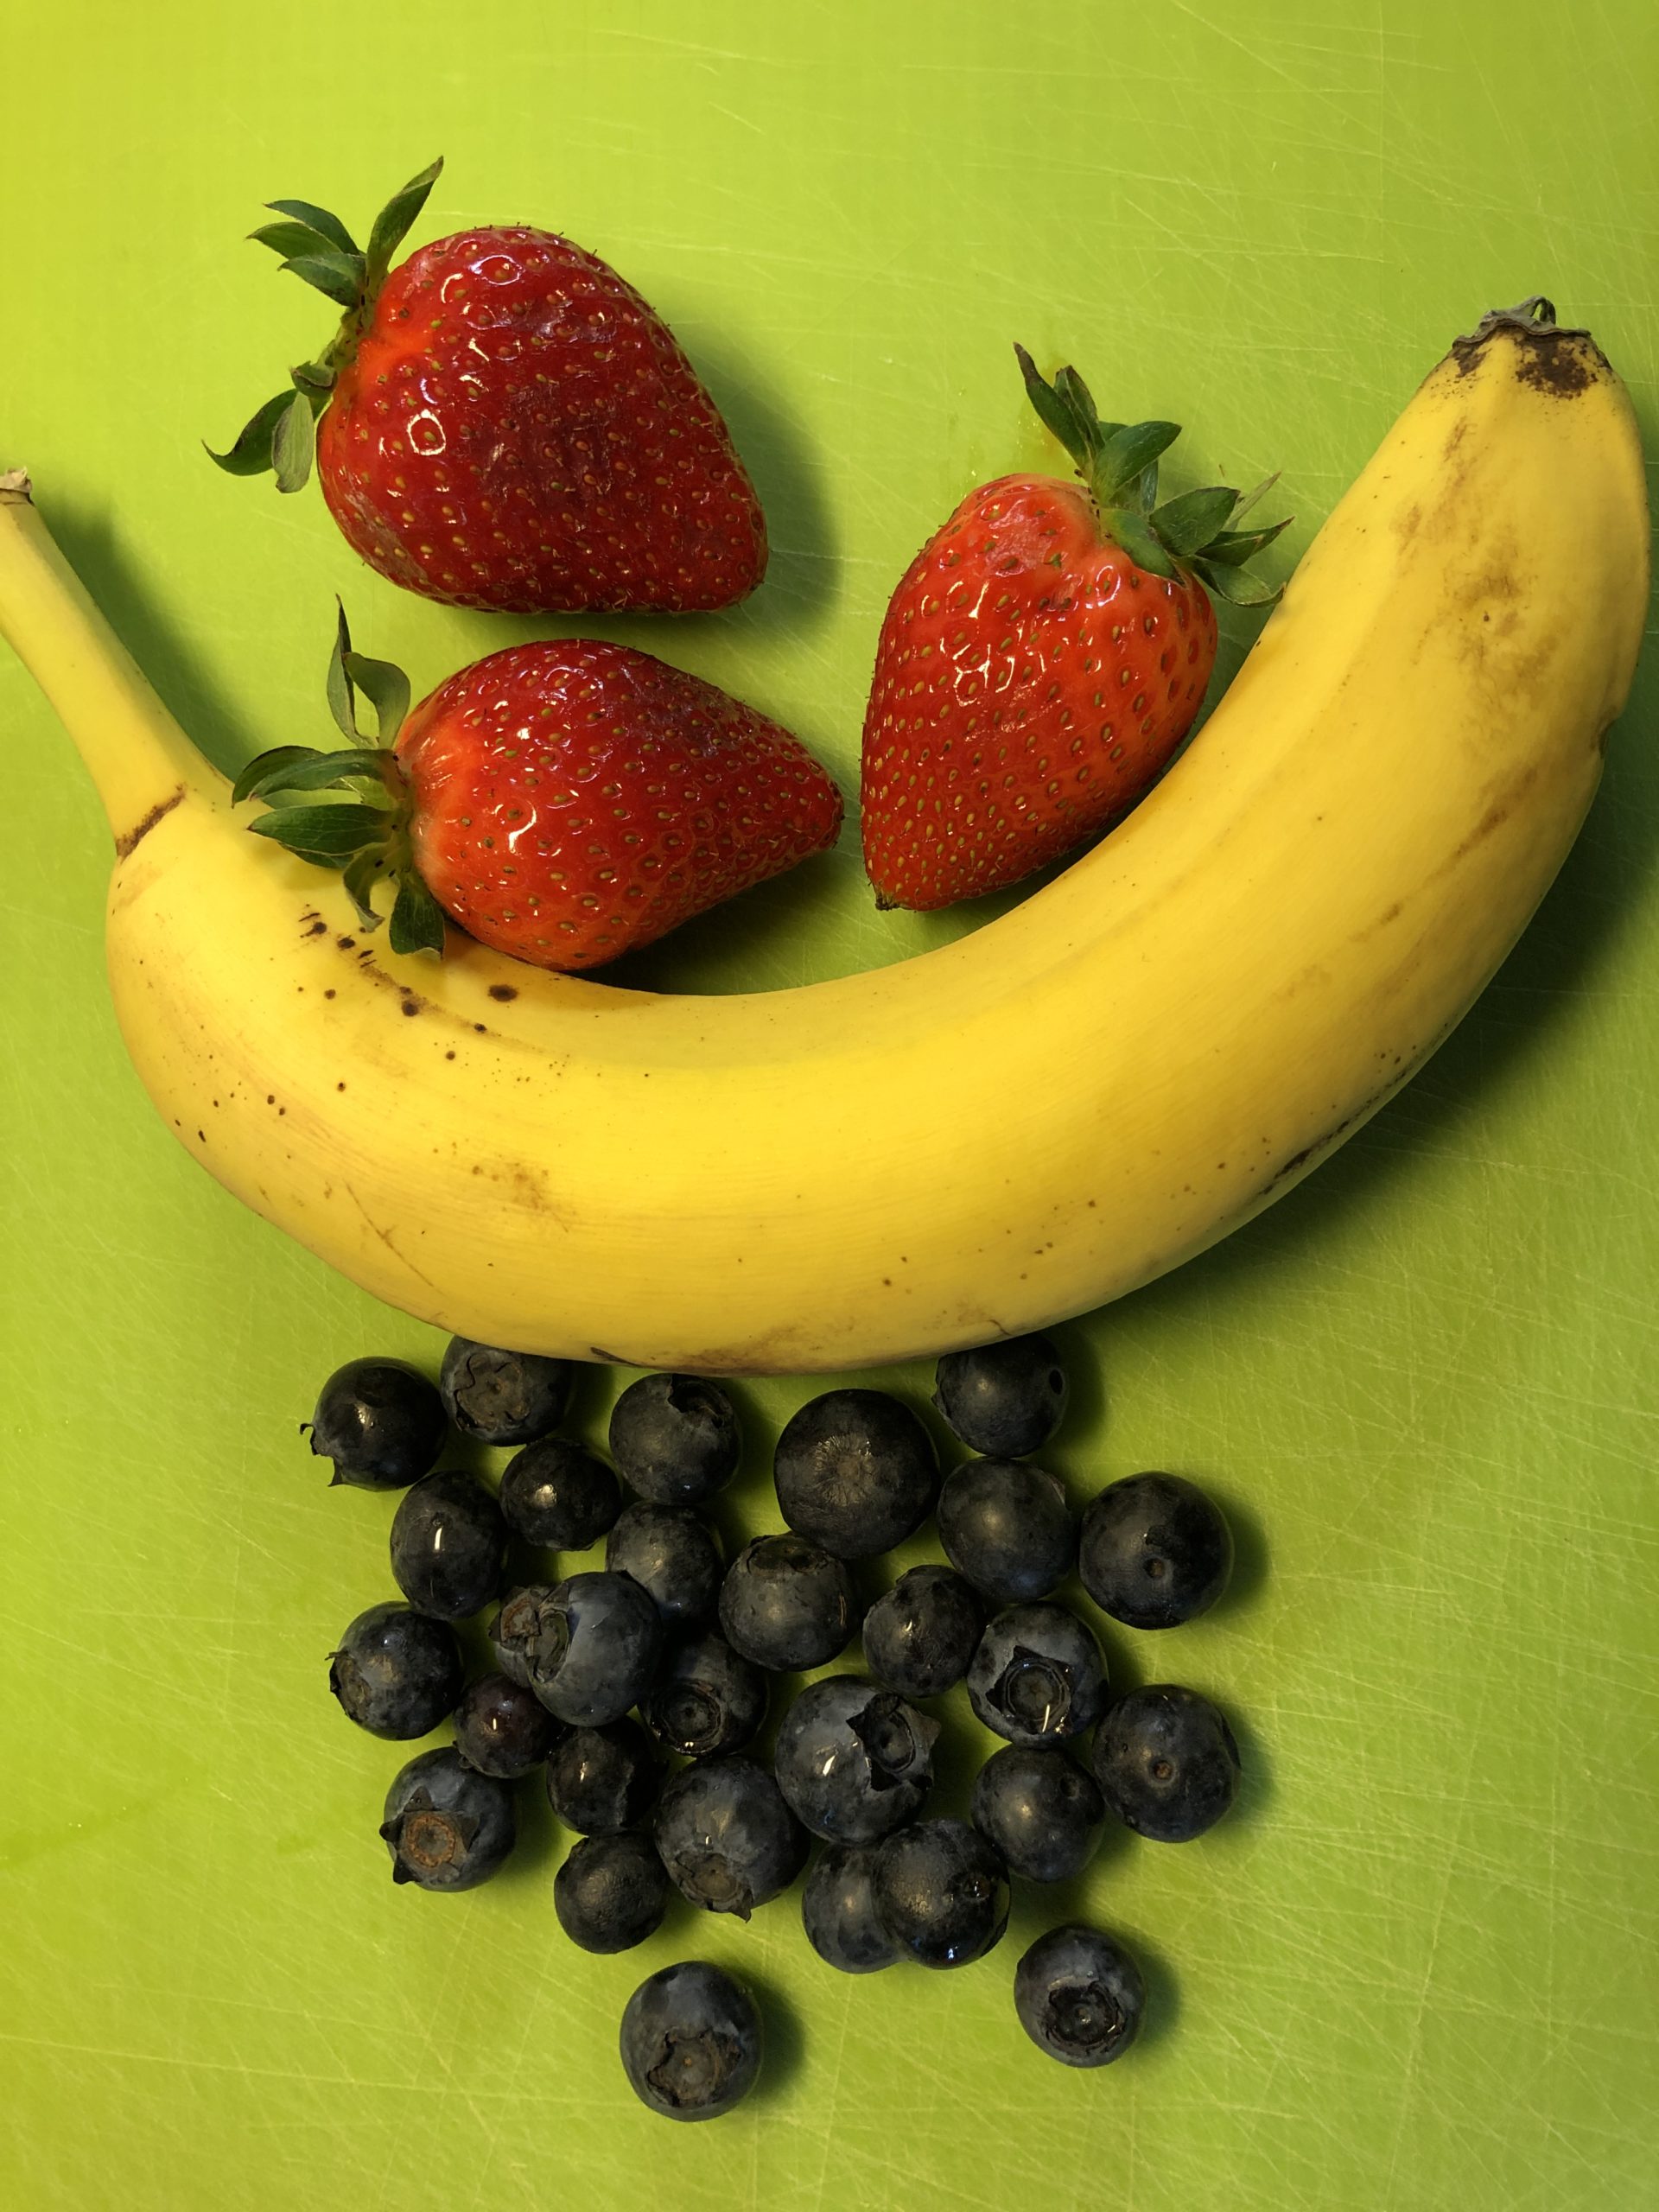 Bild zum Schritt 1 für das Bastel- und DIY-Abenteuer für Kinder: 'Erdbeeren und Heidelbeeren waschen, Stile und Blätter entfernen. Banane schälen.'